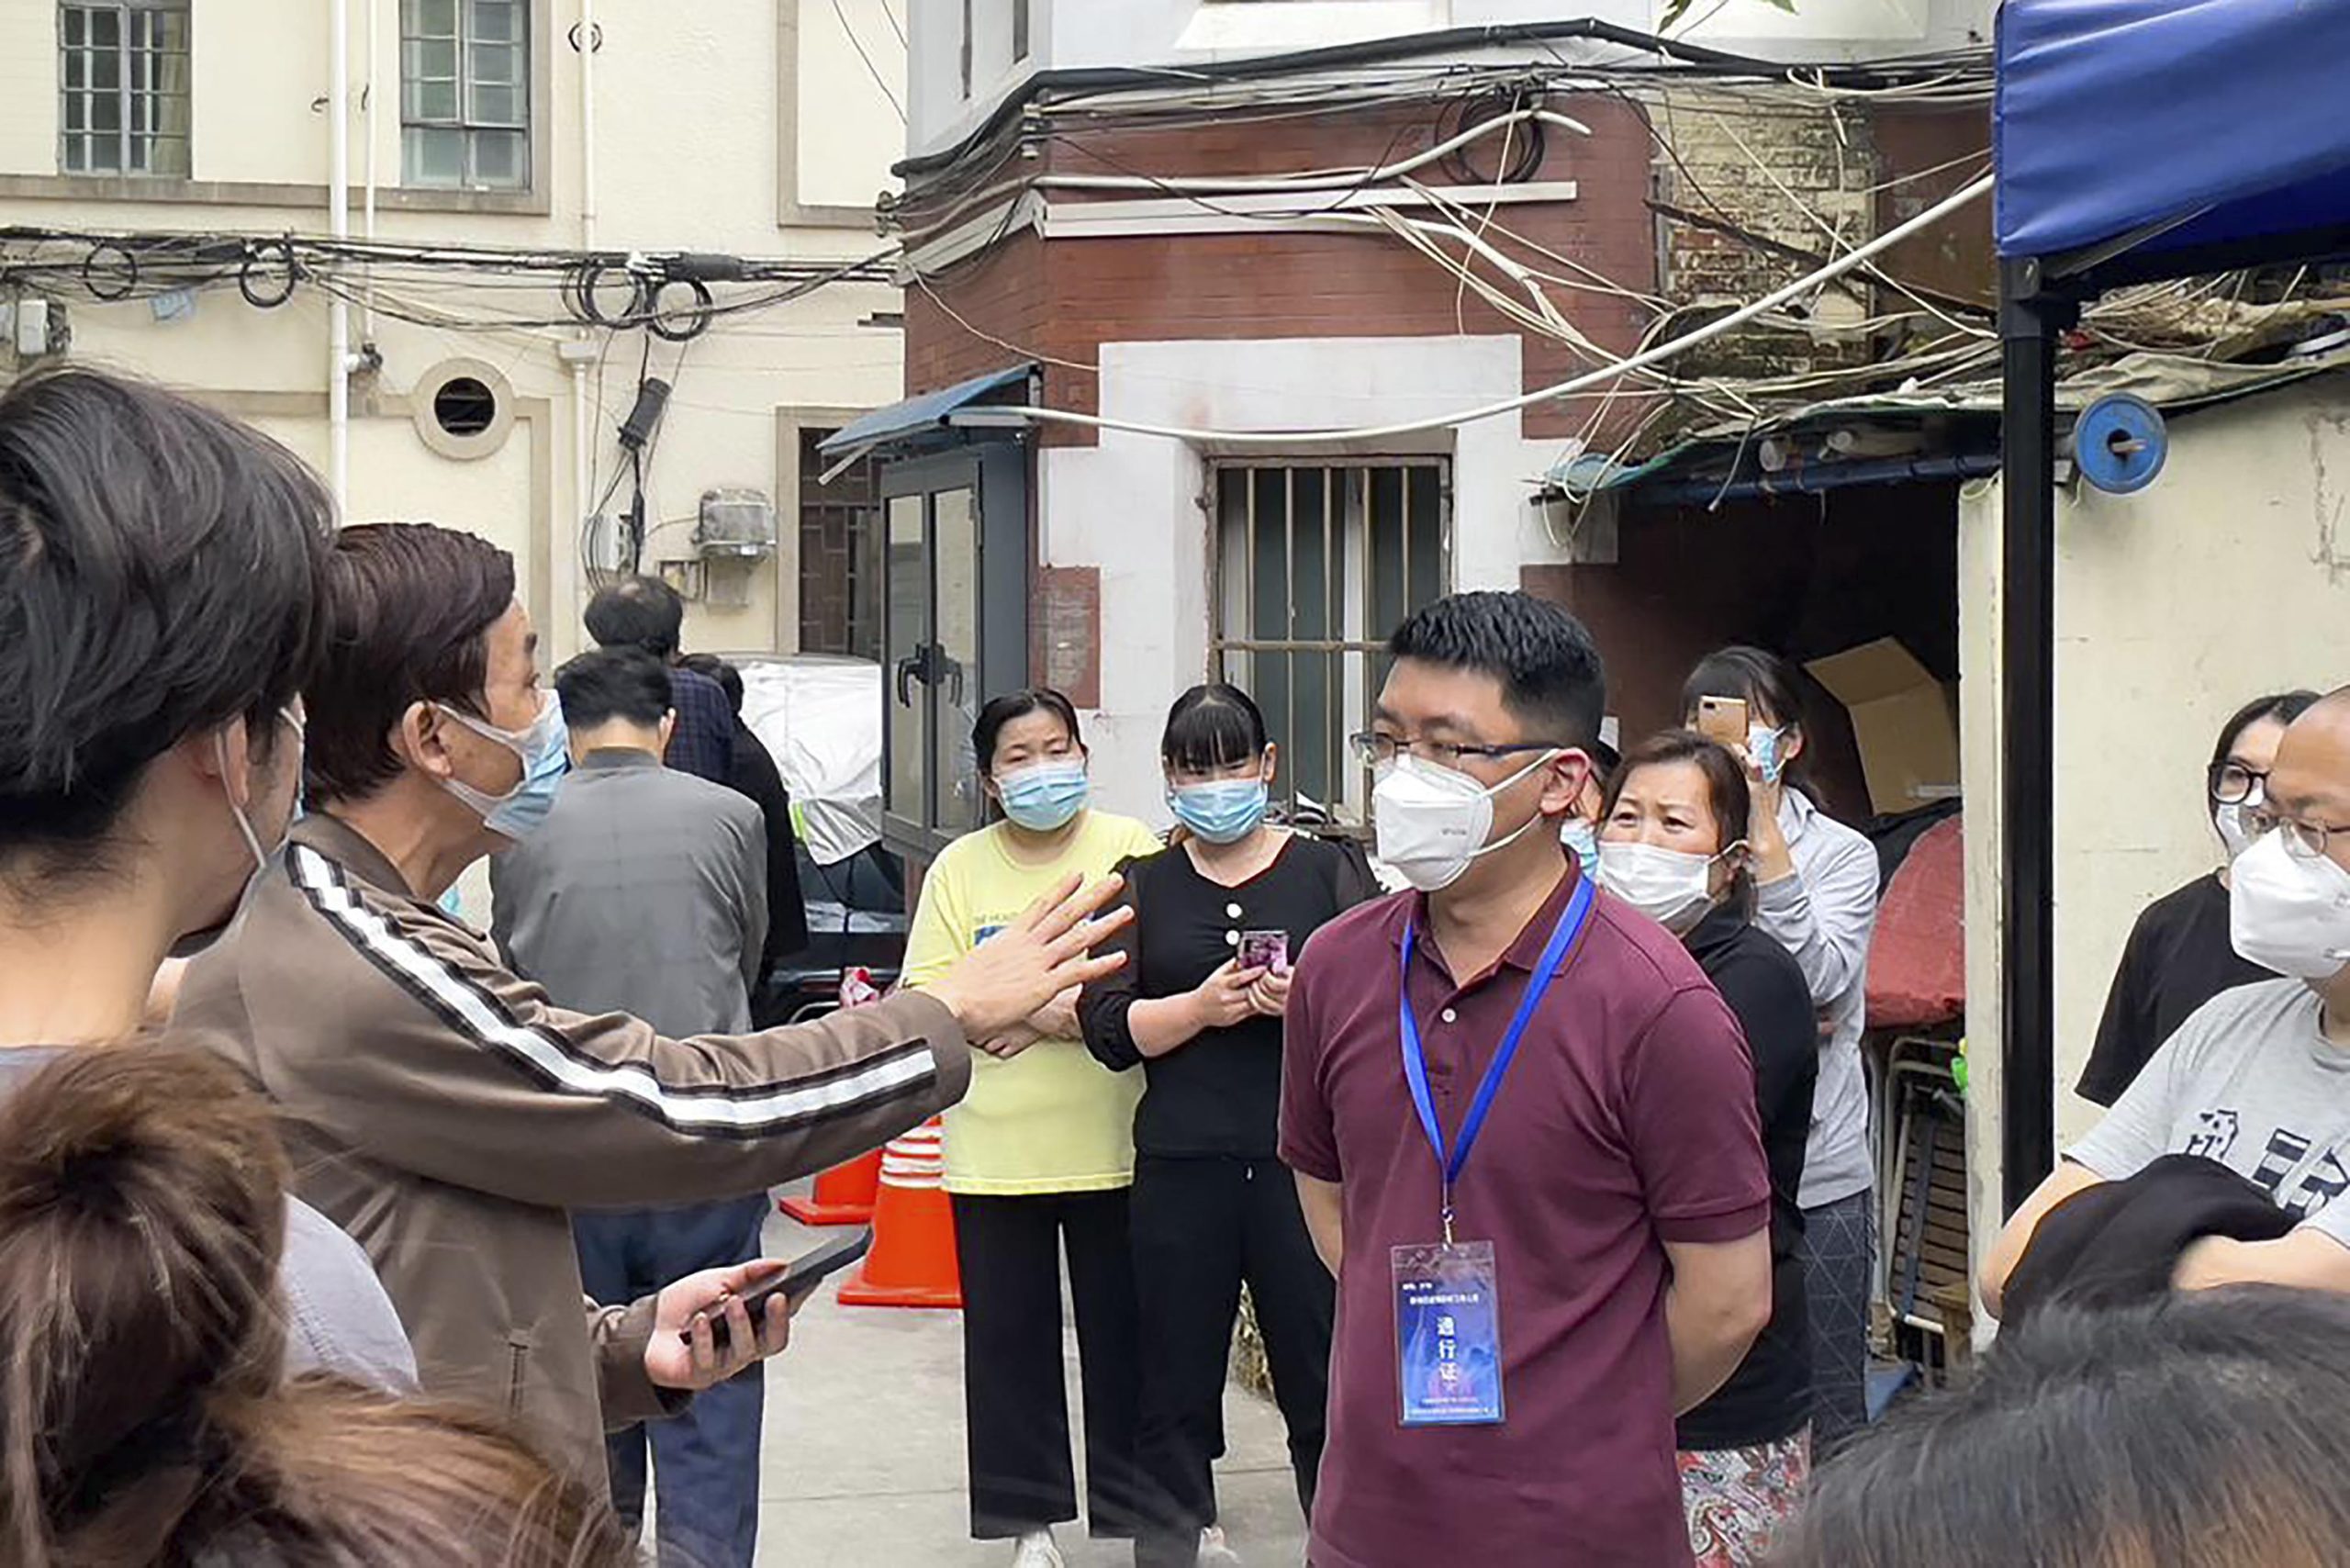 Blocco di Shanghai: i residenti chiedono il rilascio, alcuni lo ottengono